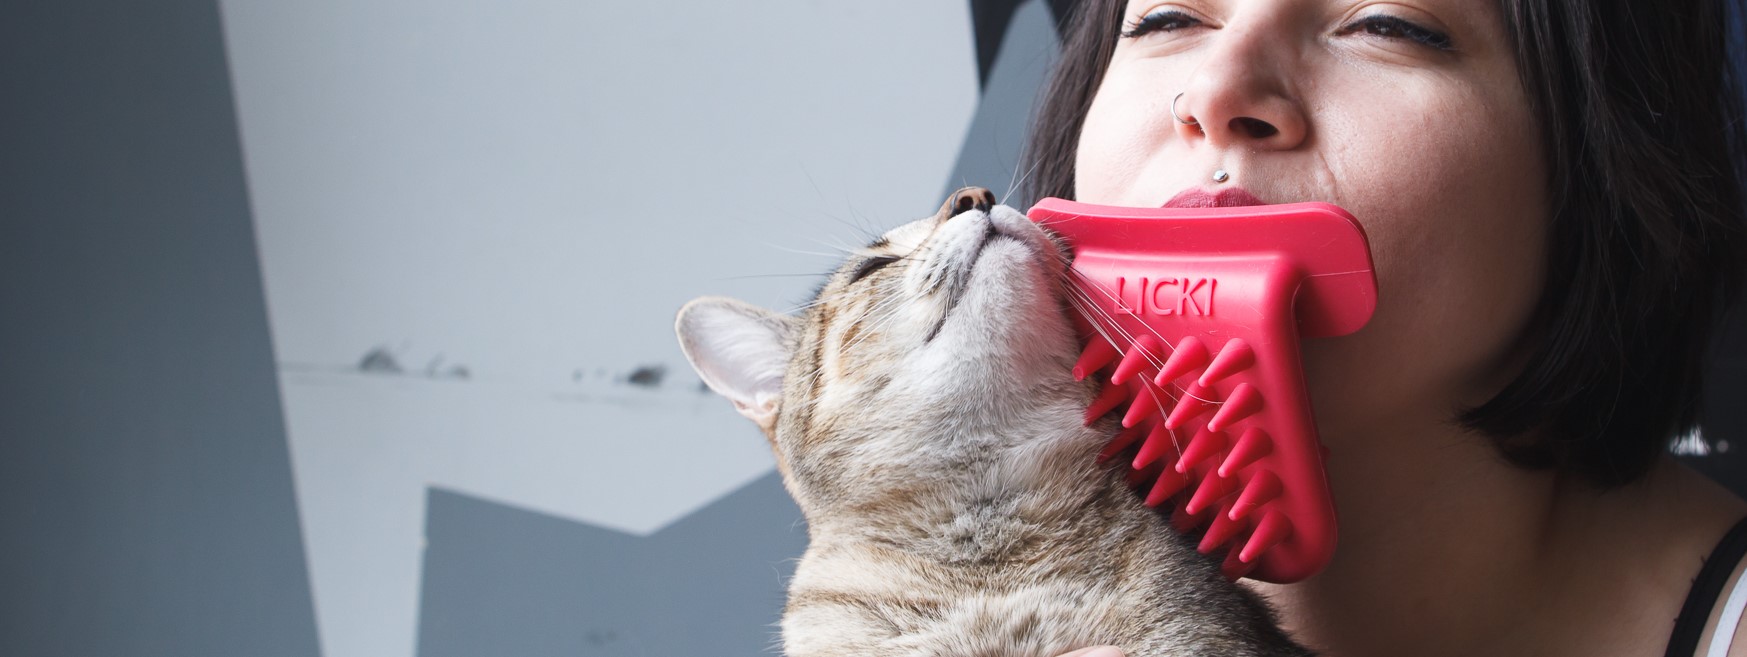 wtf-meet-licki-a-bizarre-brush-to-lick-your-cat-pet-gadgets